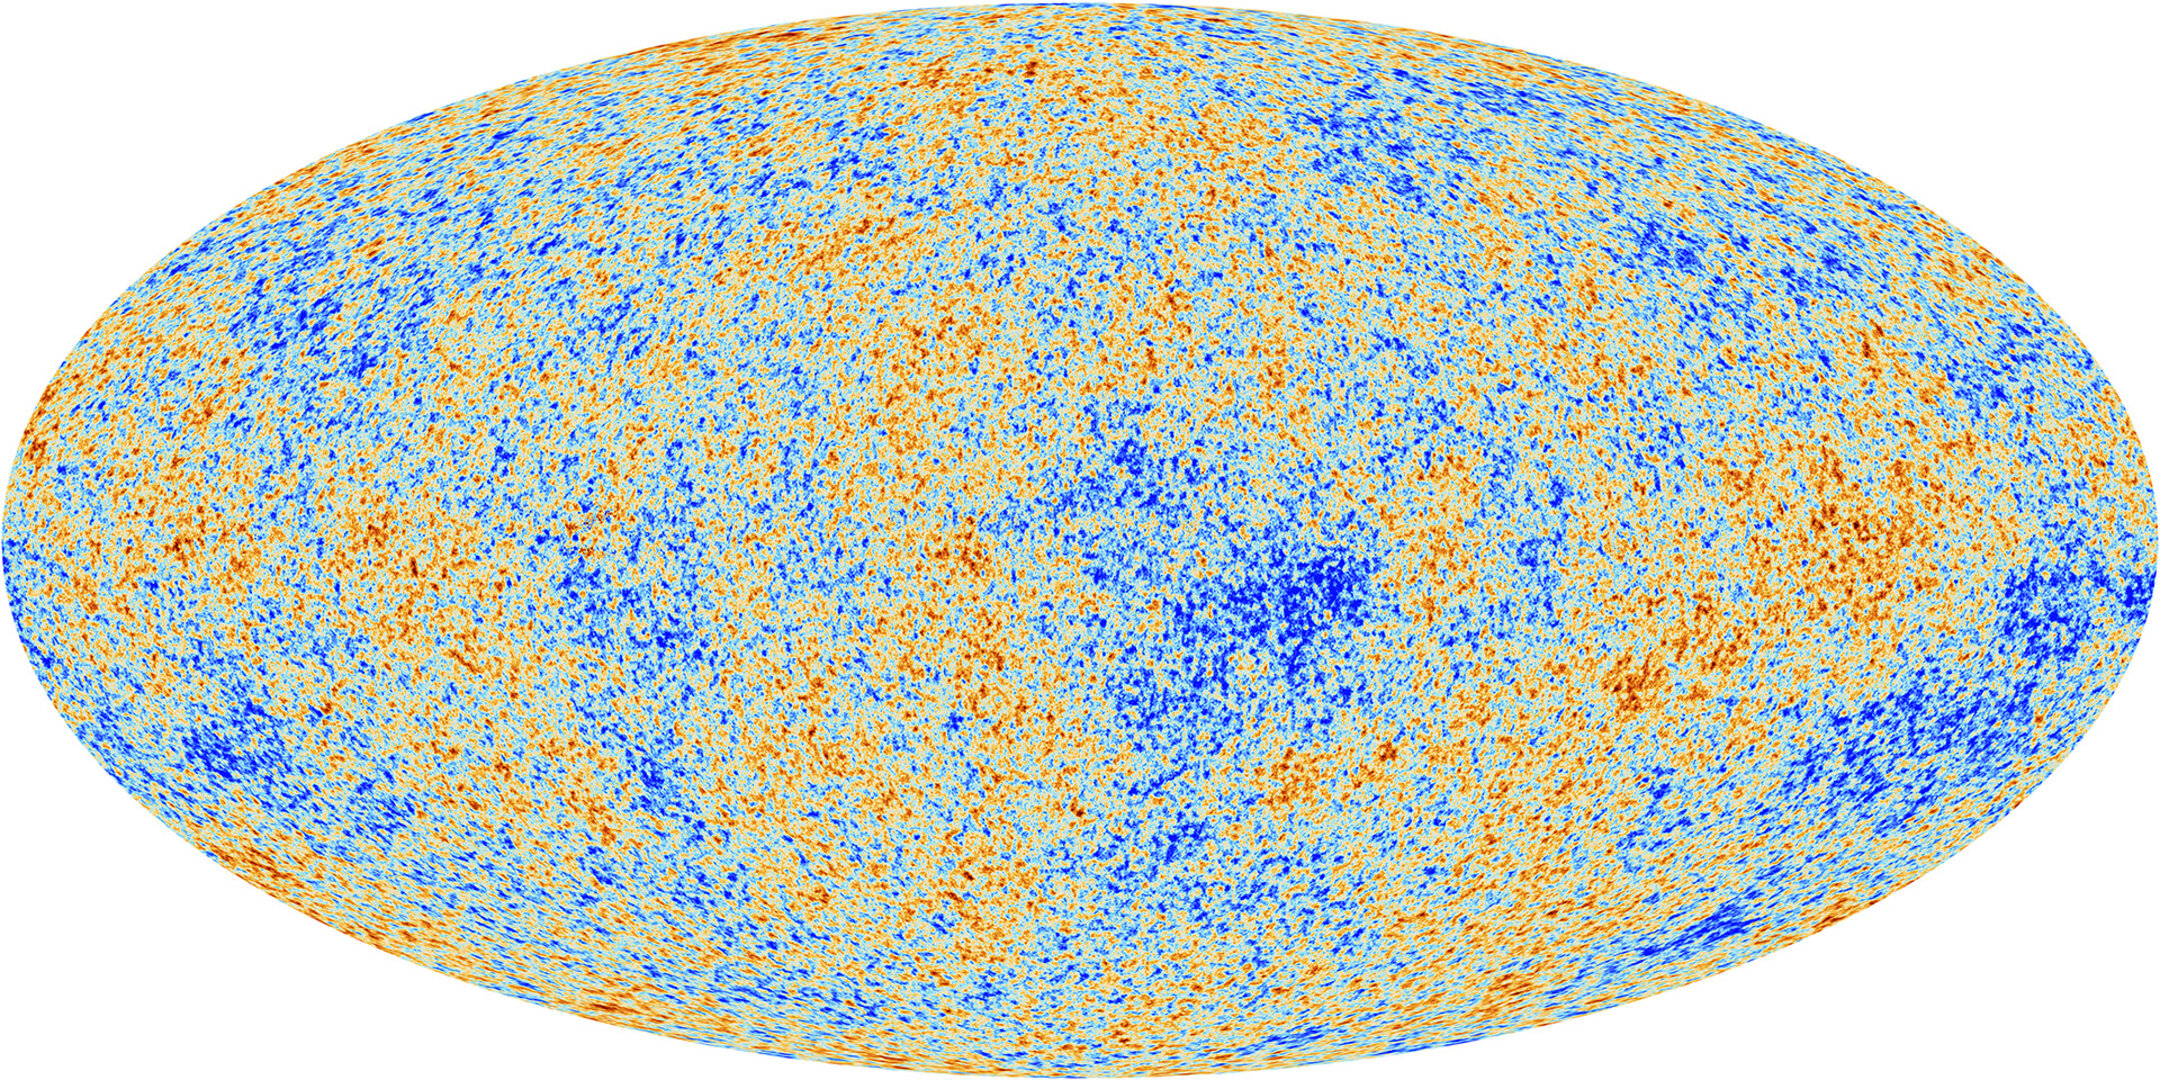 Kosmische Mikrowellen-Hintergrundstrahlung aus der Sicht von Planck